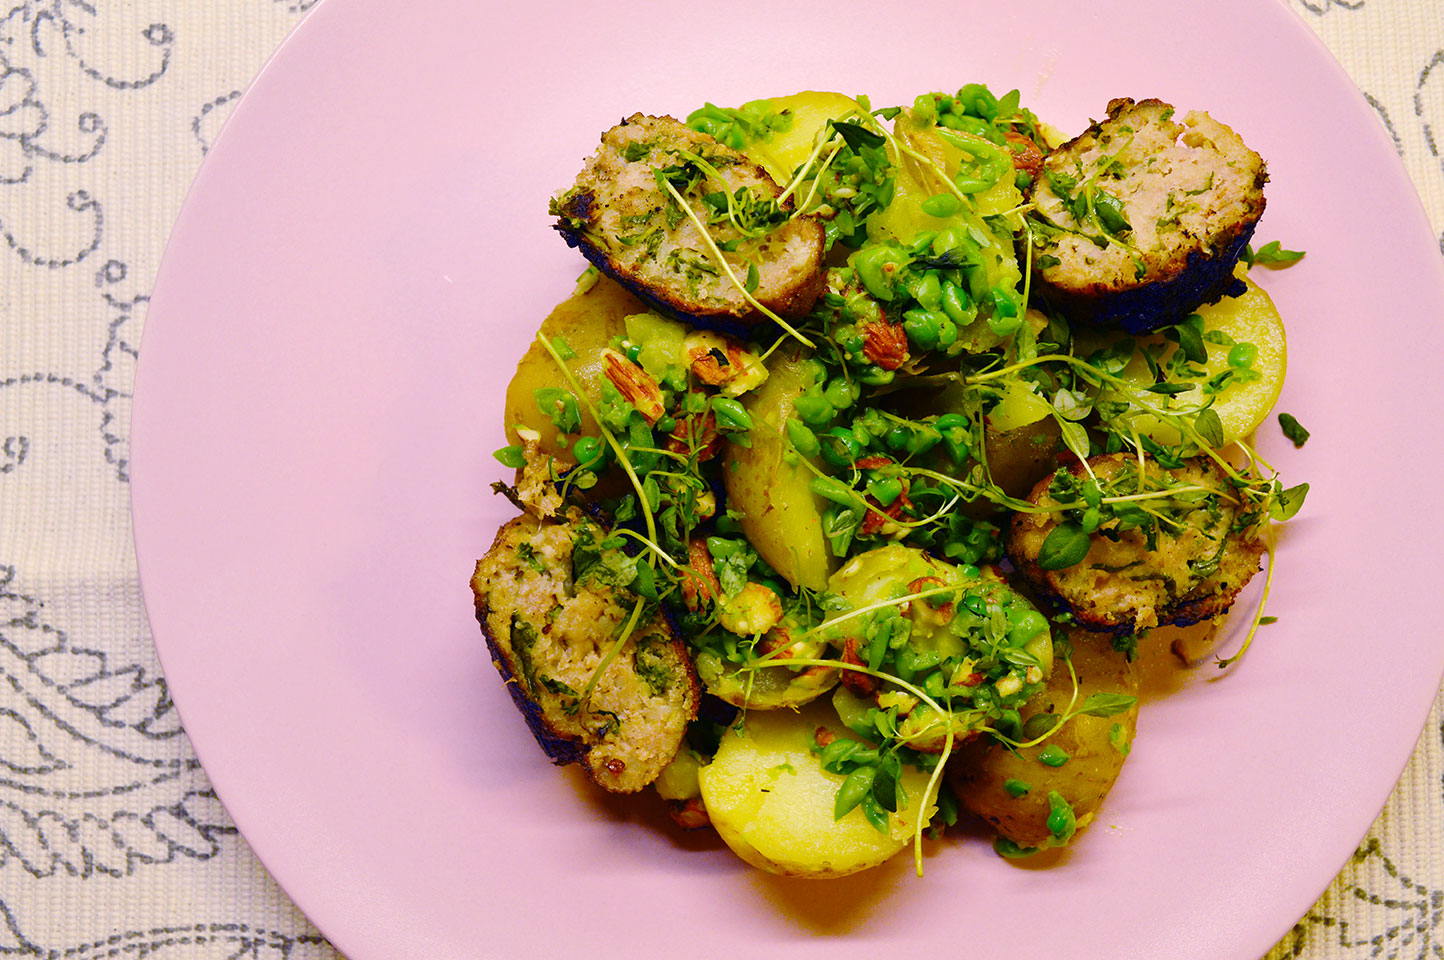 Kartoffelsalat med ærtepesto og grønkålsfrikadeller fra GastroUlven